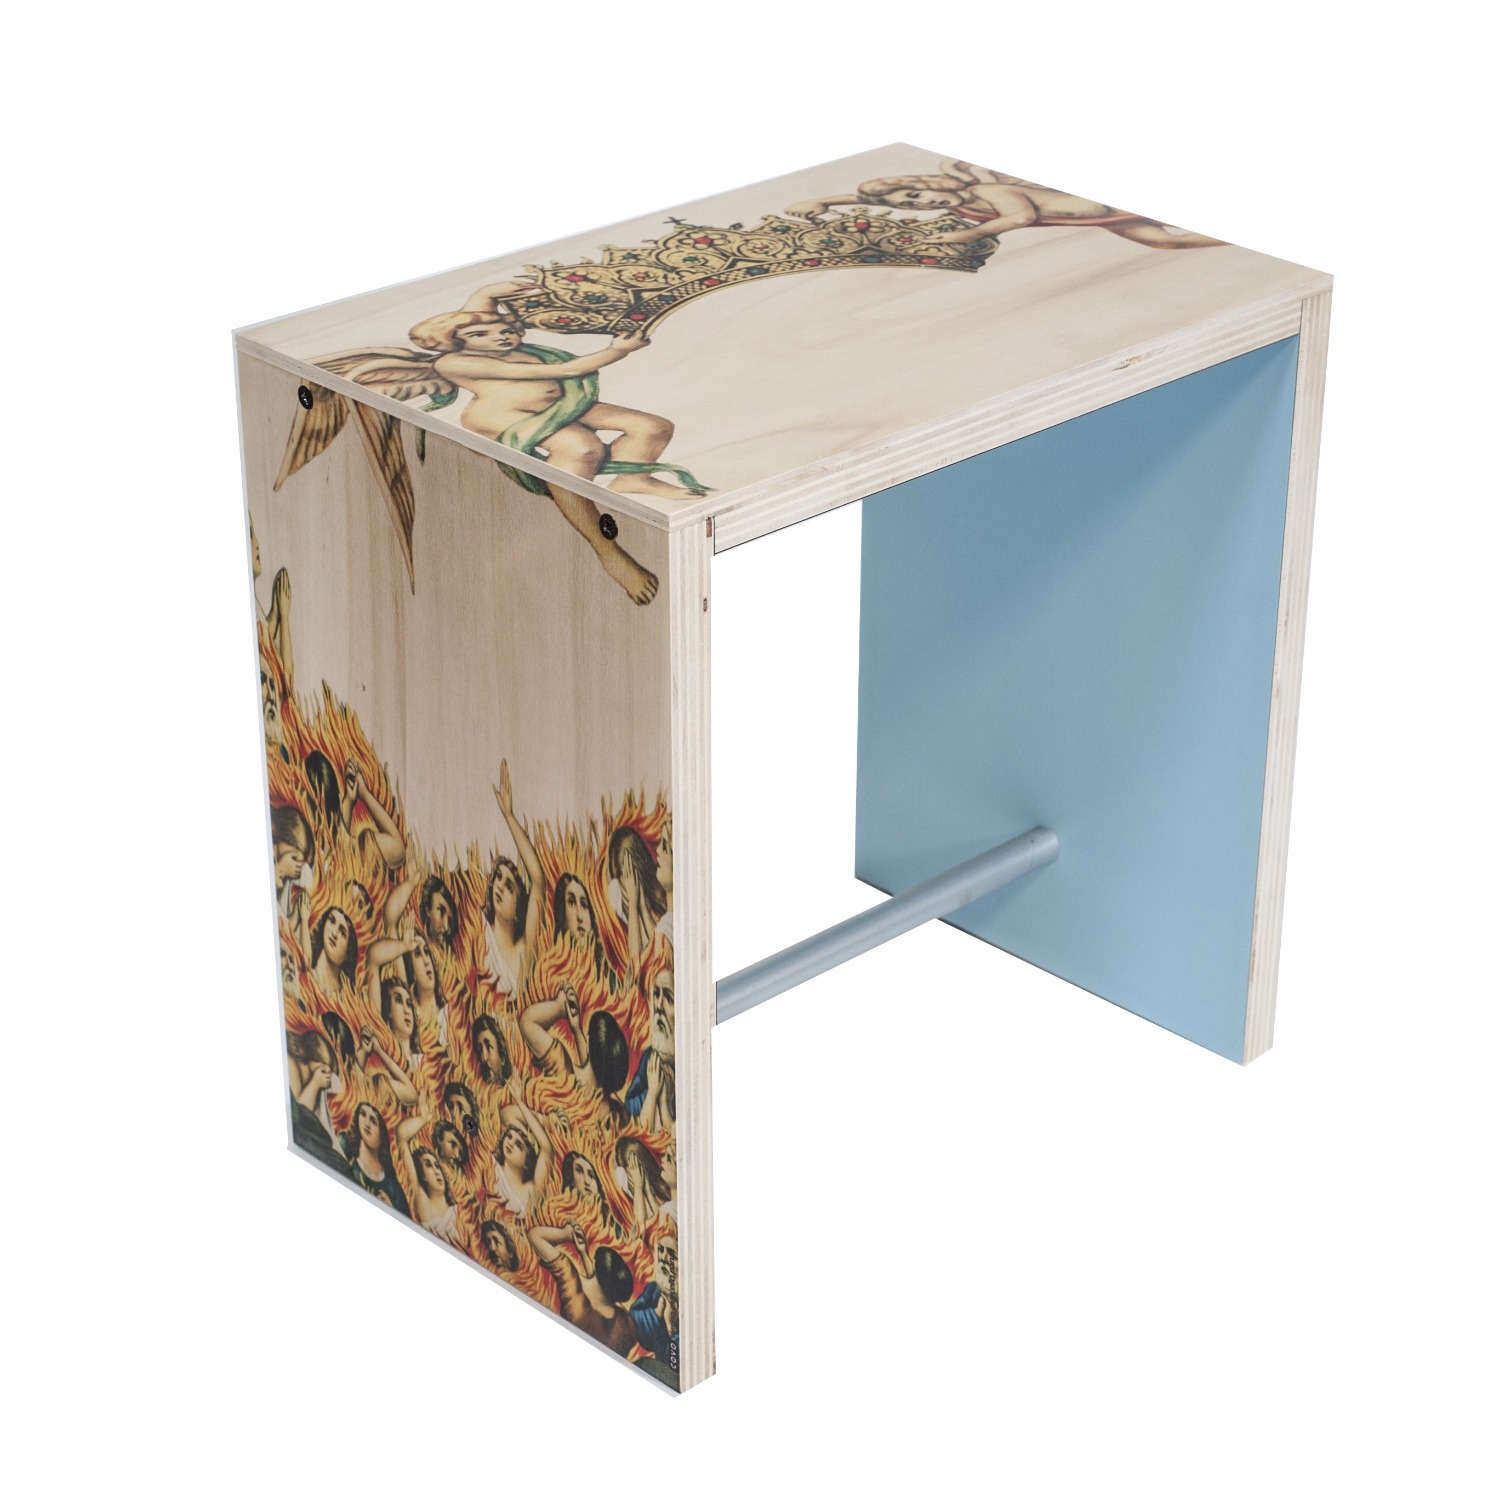 Nordico Verace_ low stool